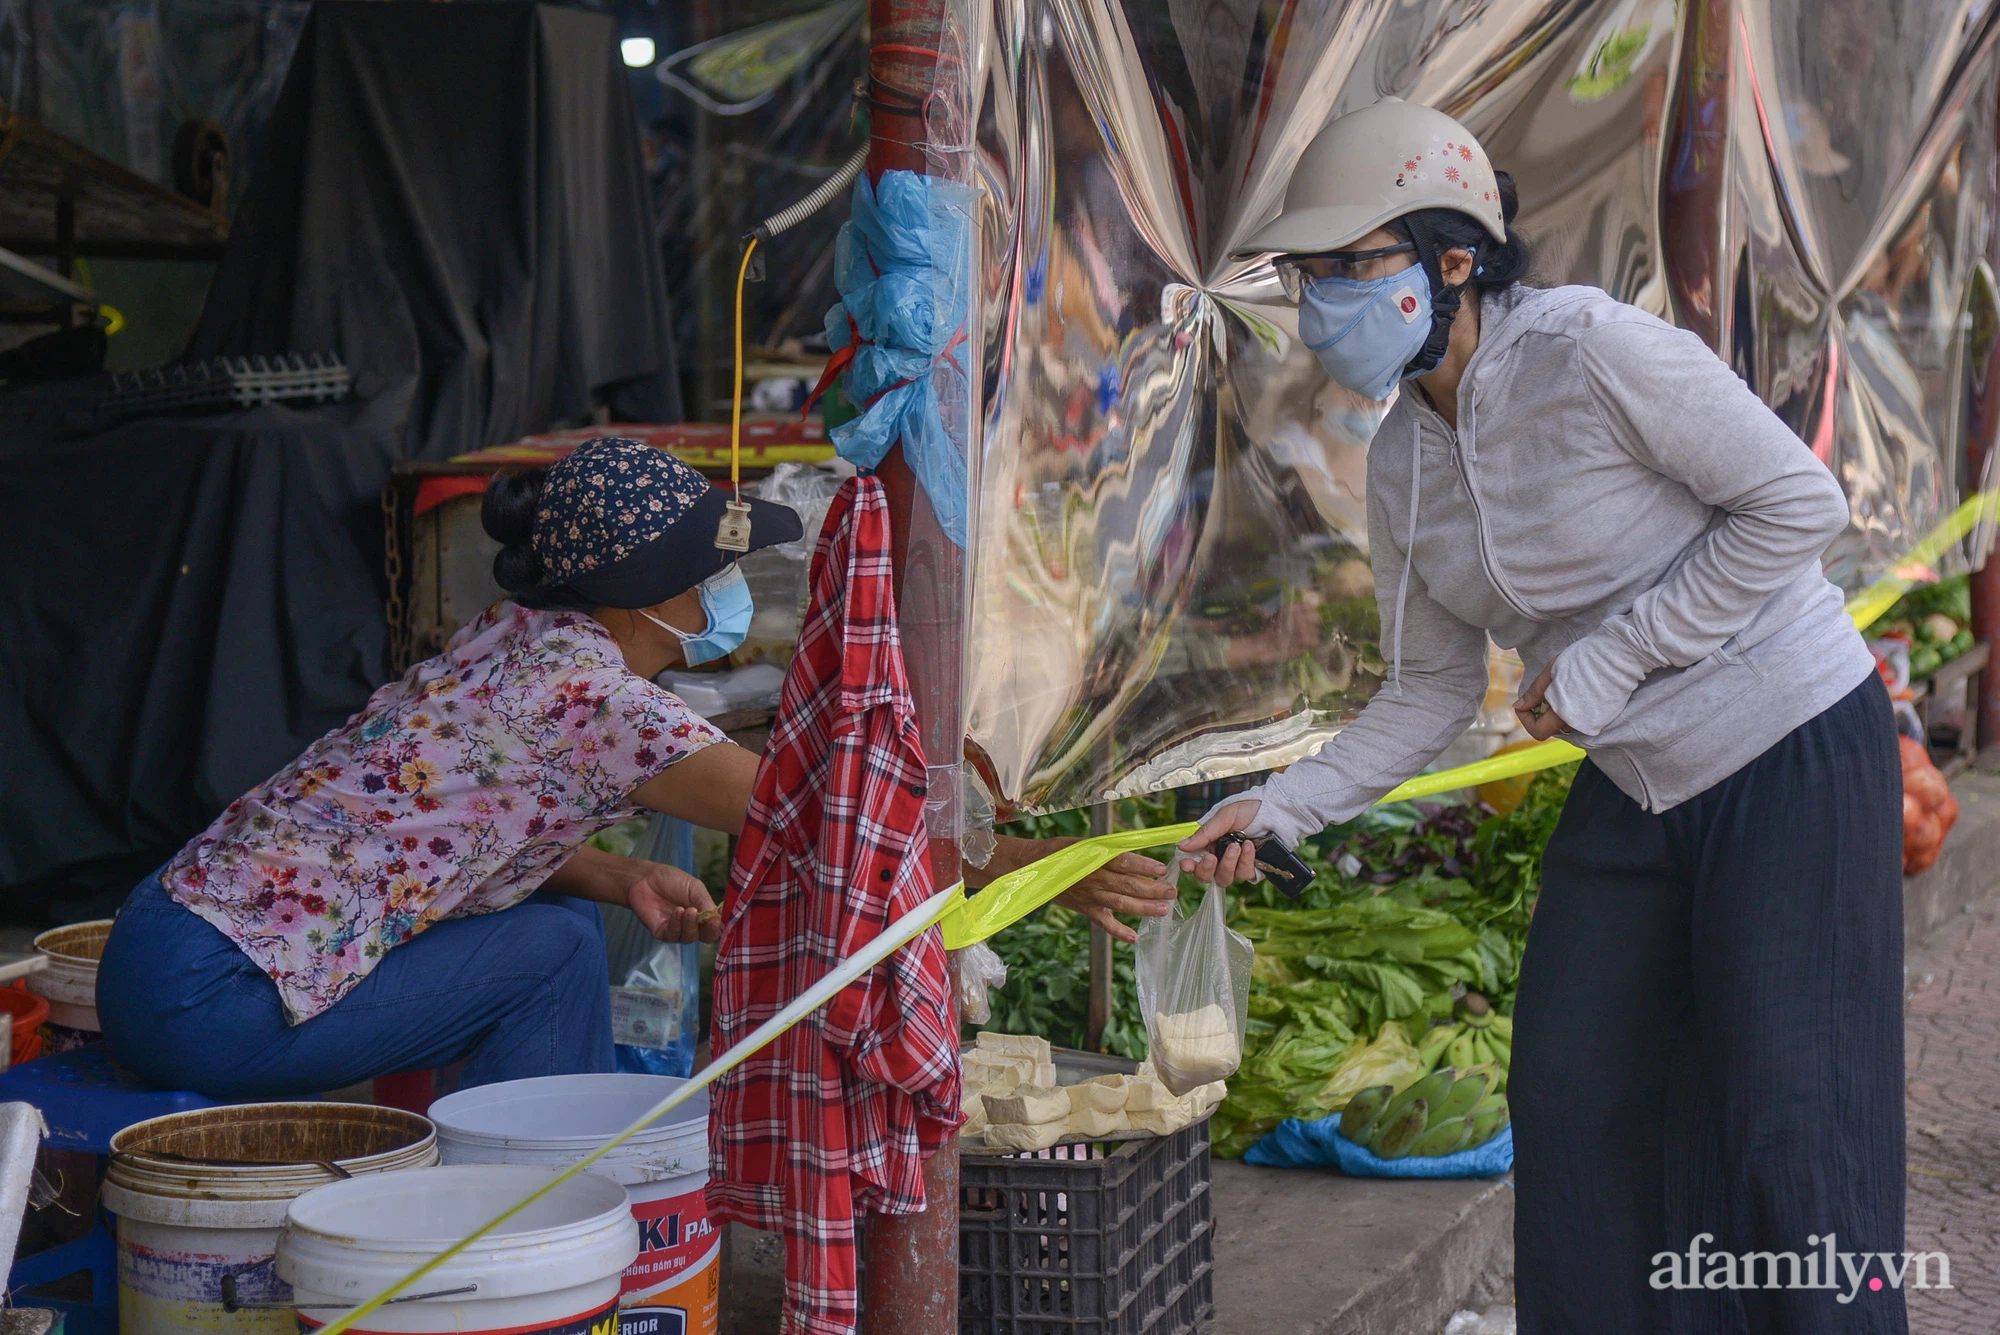 Ấn tượng với khu chợ dân sinh đầu tiên ở Hà Nội quây tấm nilon phòng dịch COVID-19, tiểu thương chia ca đứng bán theo ngày chẵn, lẻ - Ảnh 12.